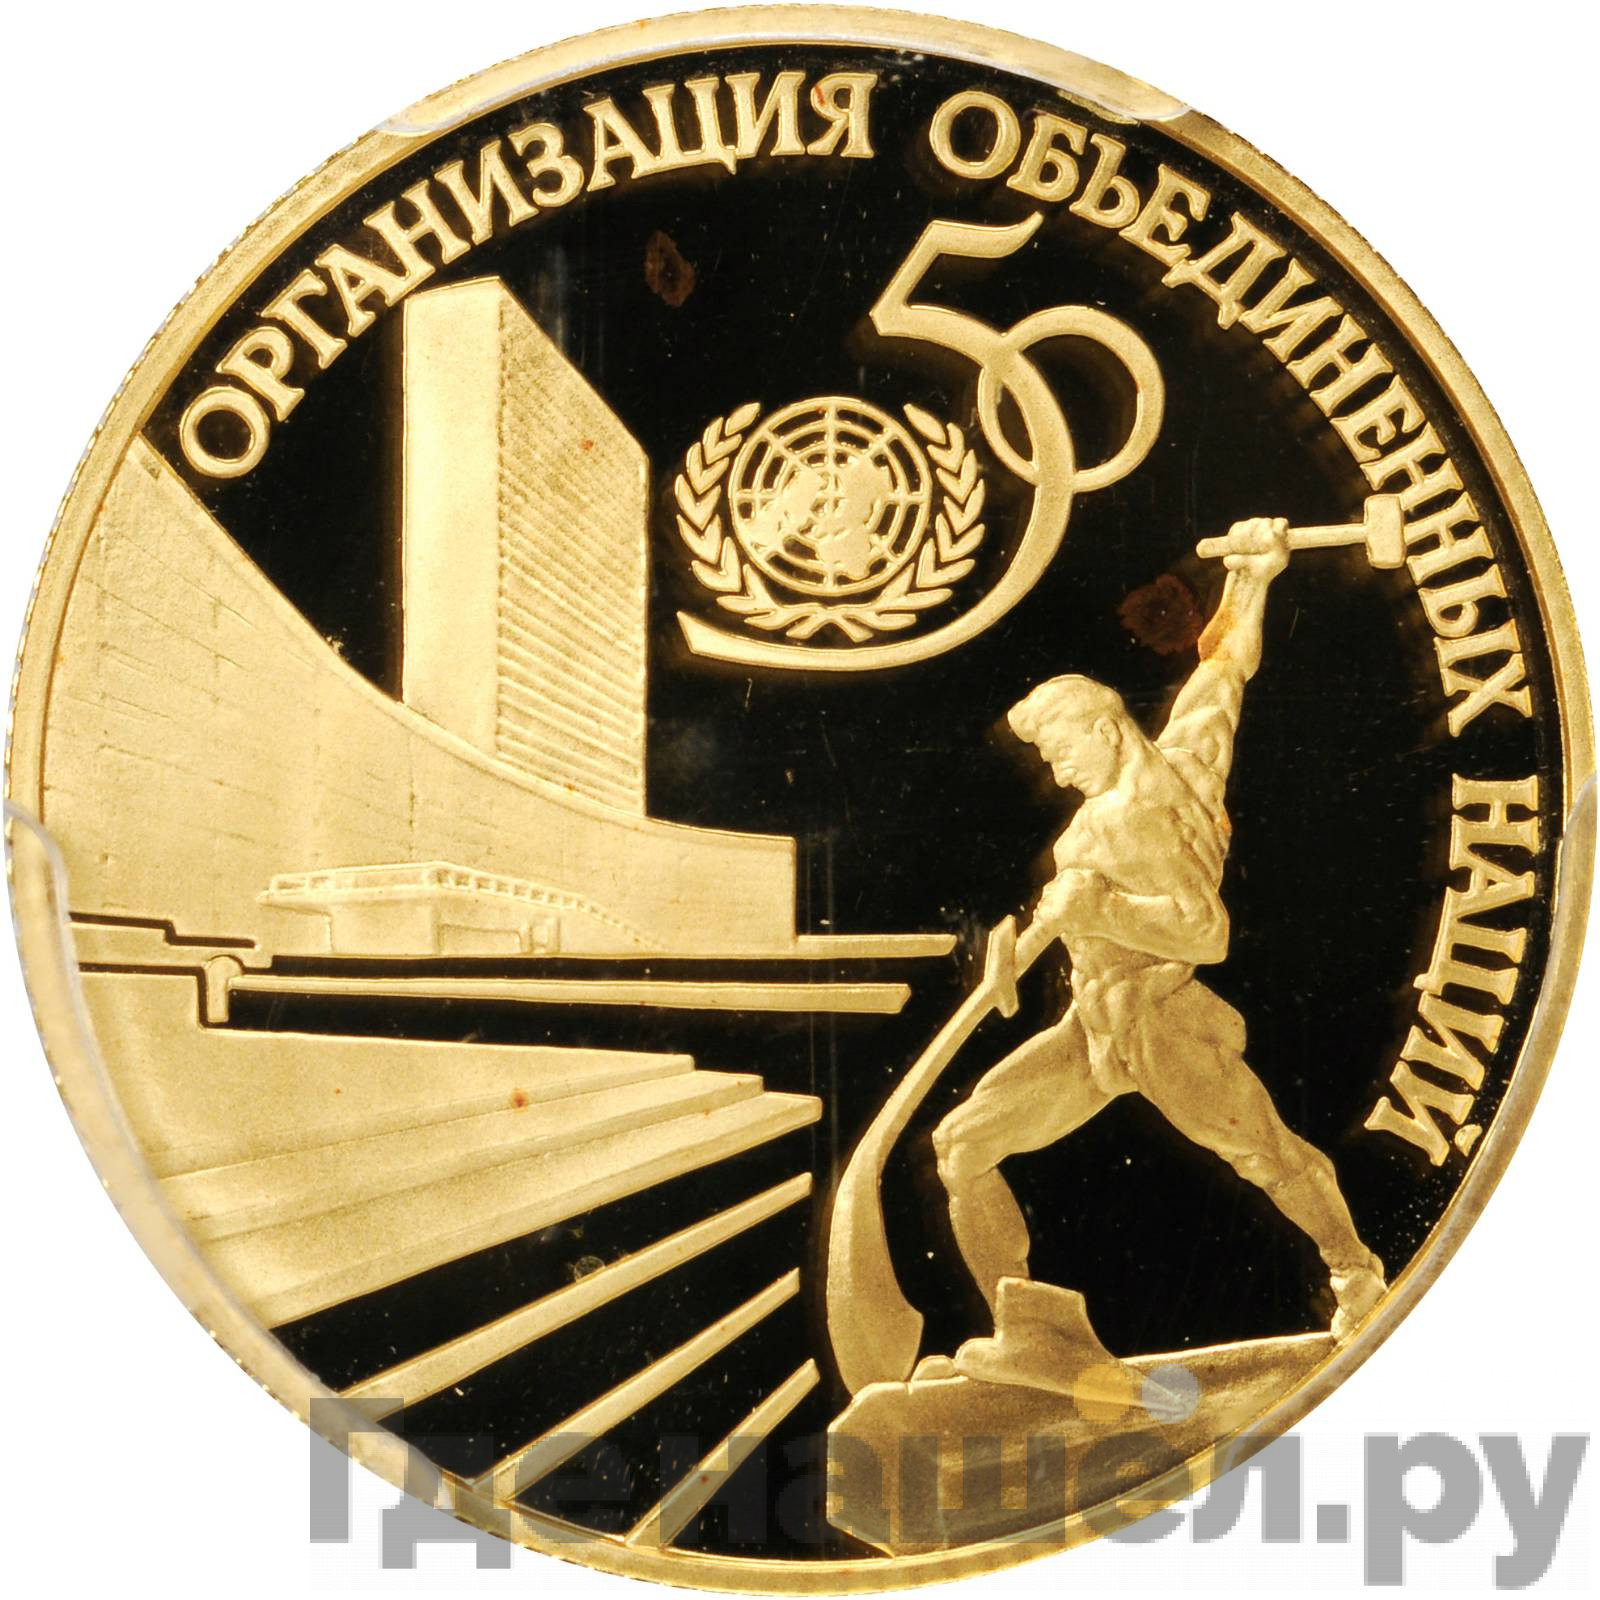 50 рублей 1995 года ЛМД 50 лет Организации Объединенных Наций